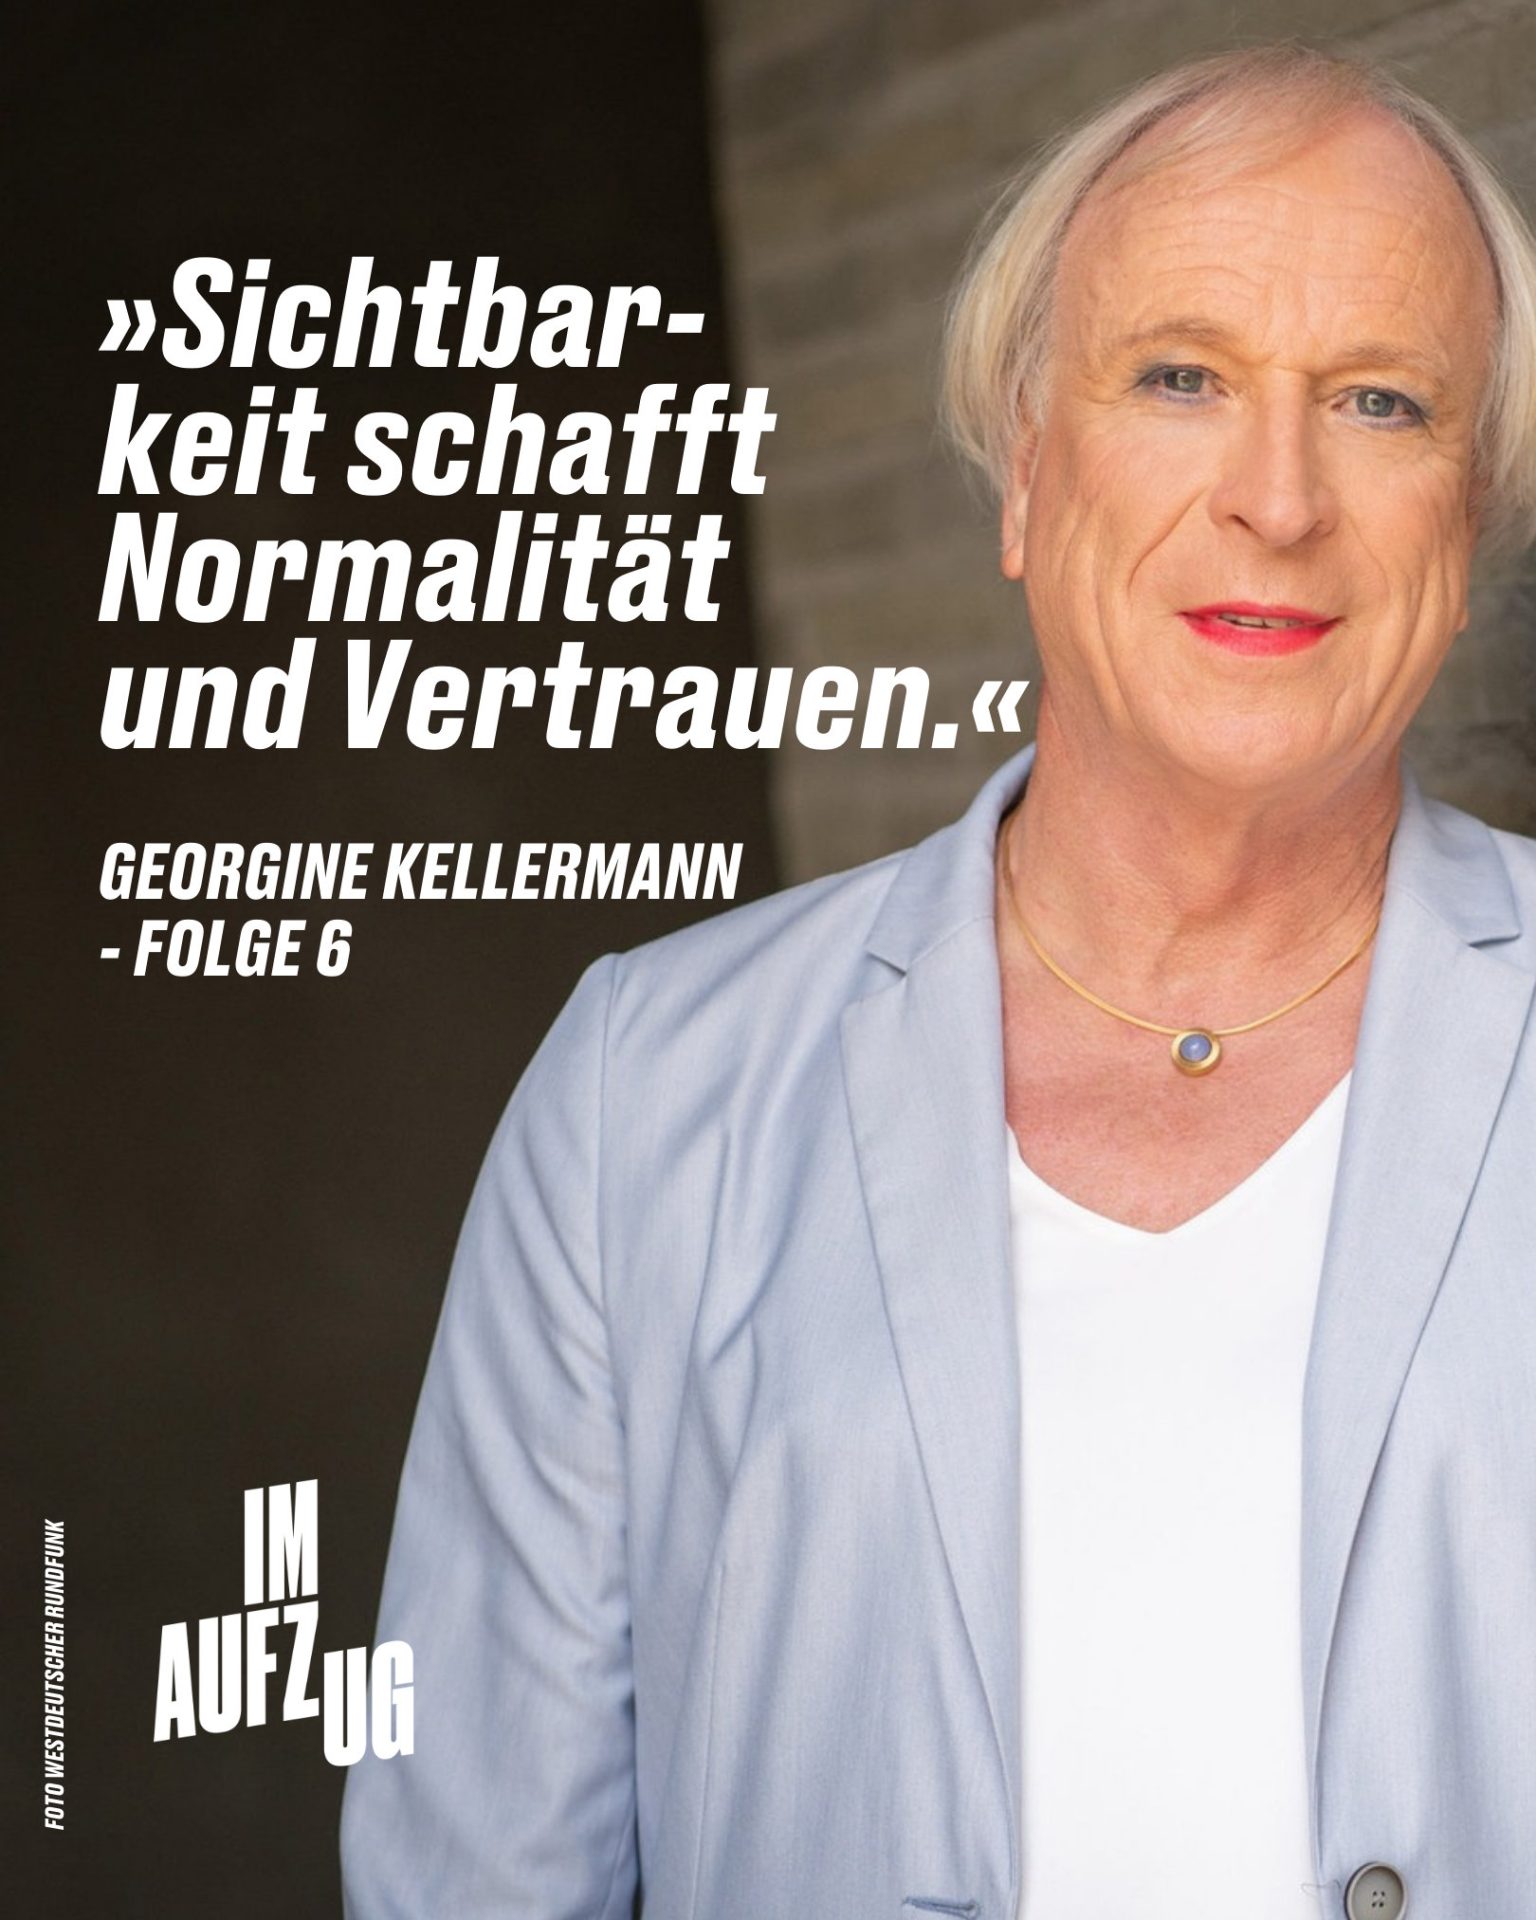 Portrait von Georgine Kellermann, Zitattext: Sichtbarkeit schafft Normalität und Vertrauen.